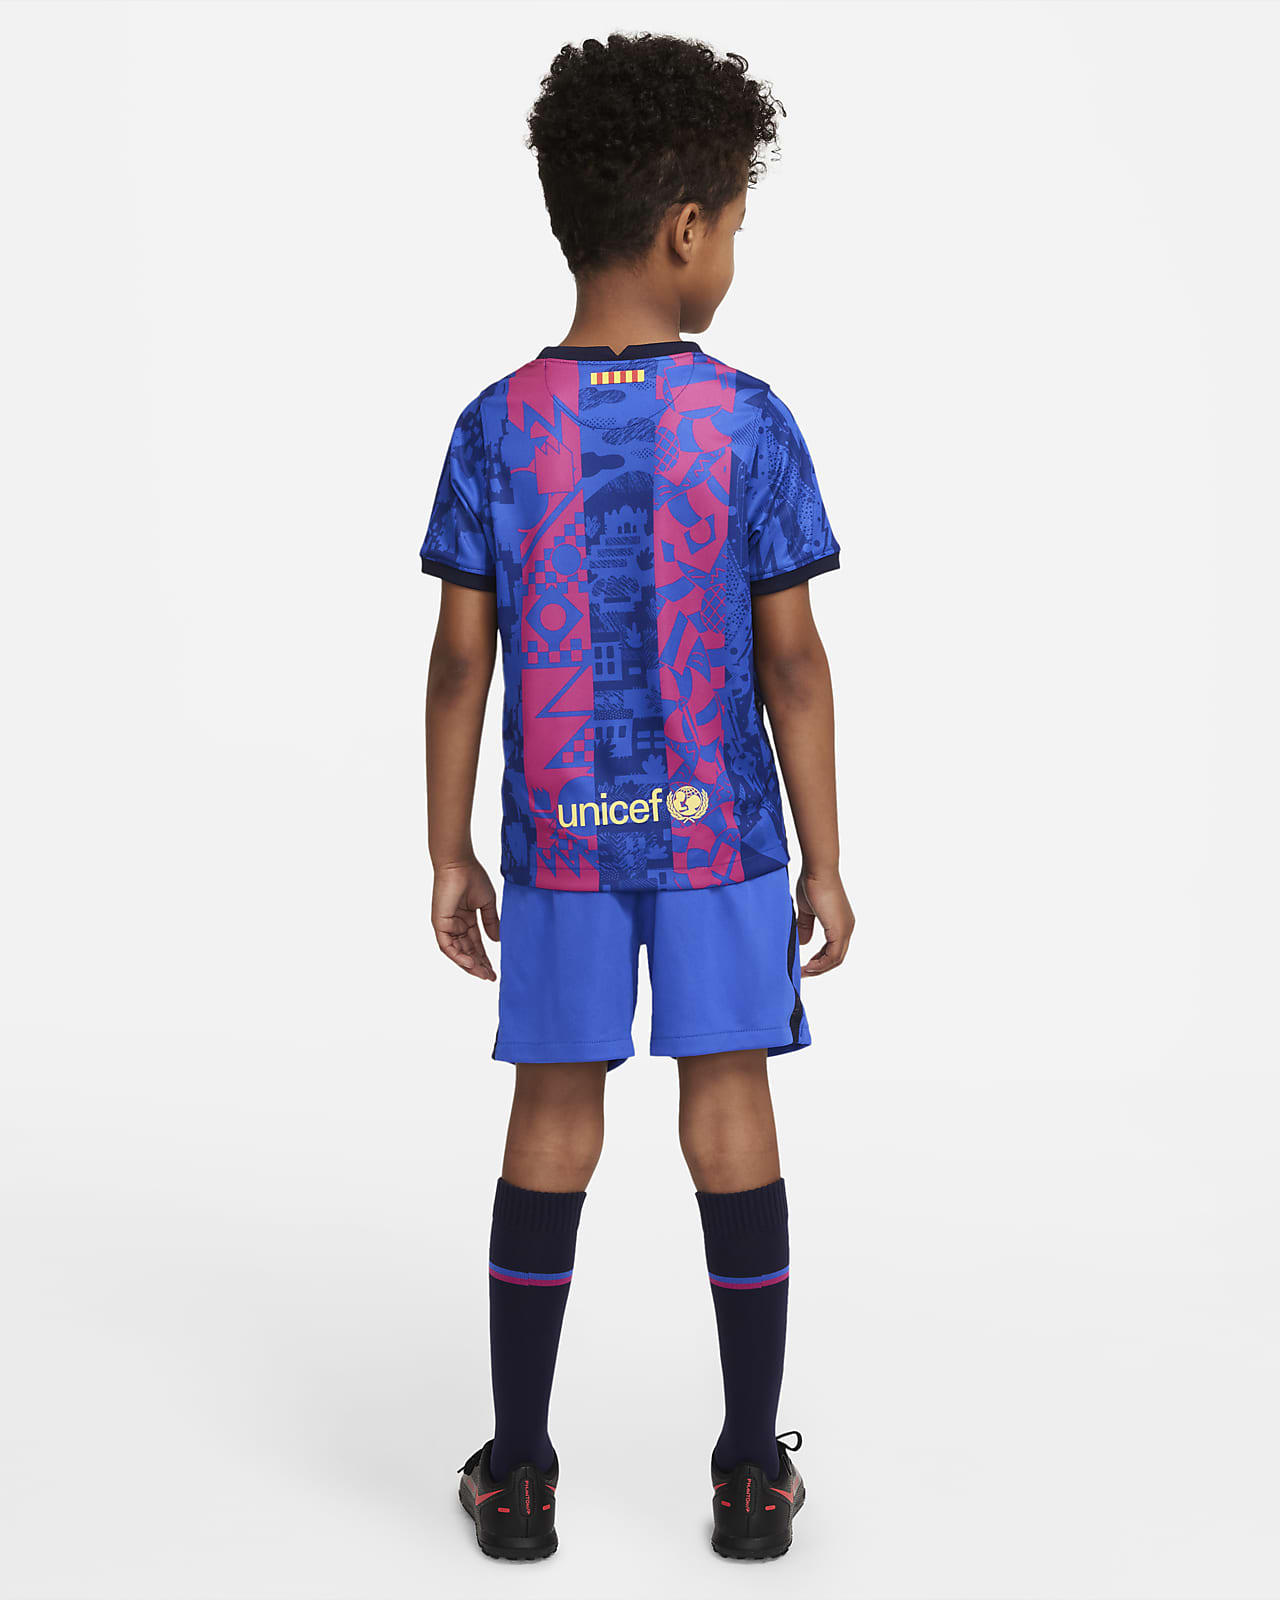 mooi zo venster Belofte FC Barcelona 2021/22 Third Little Kids' Soccer Kit. Nike.com